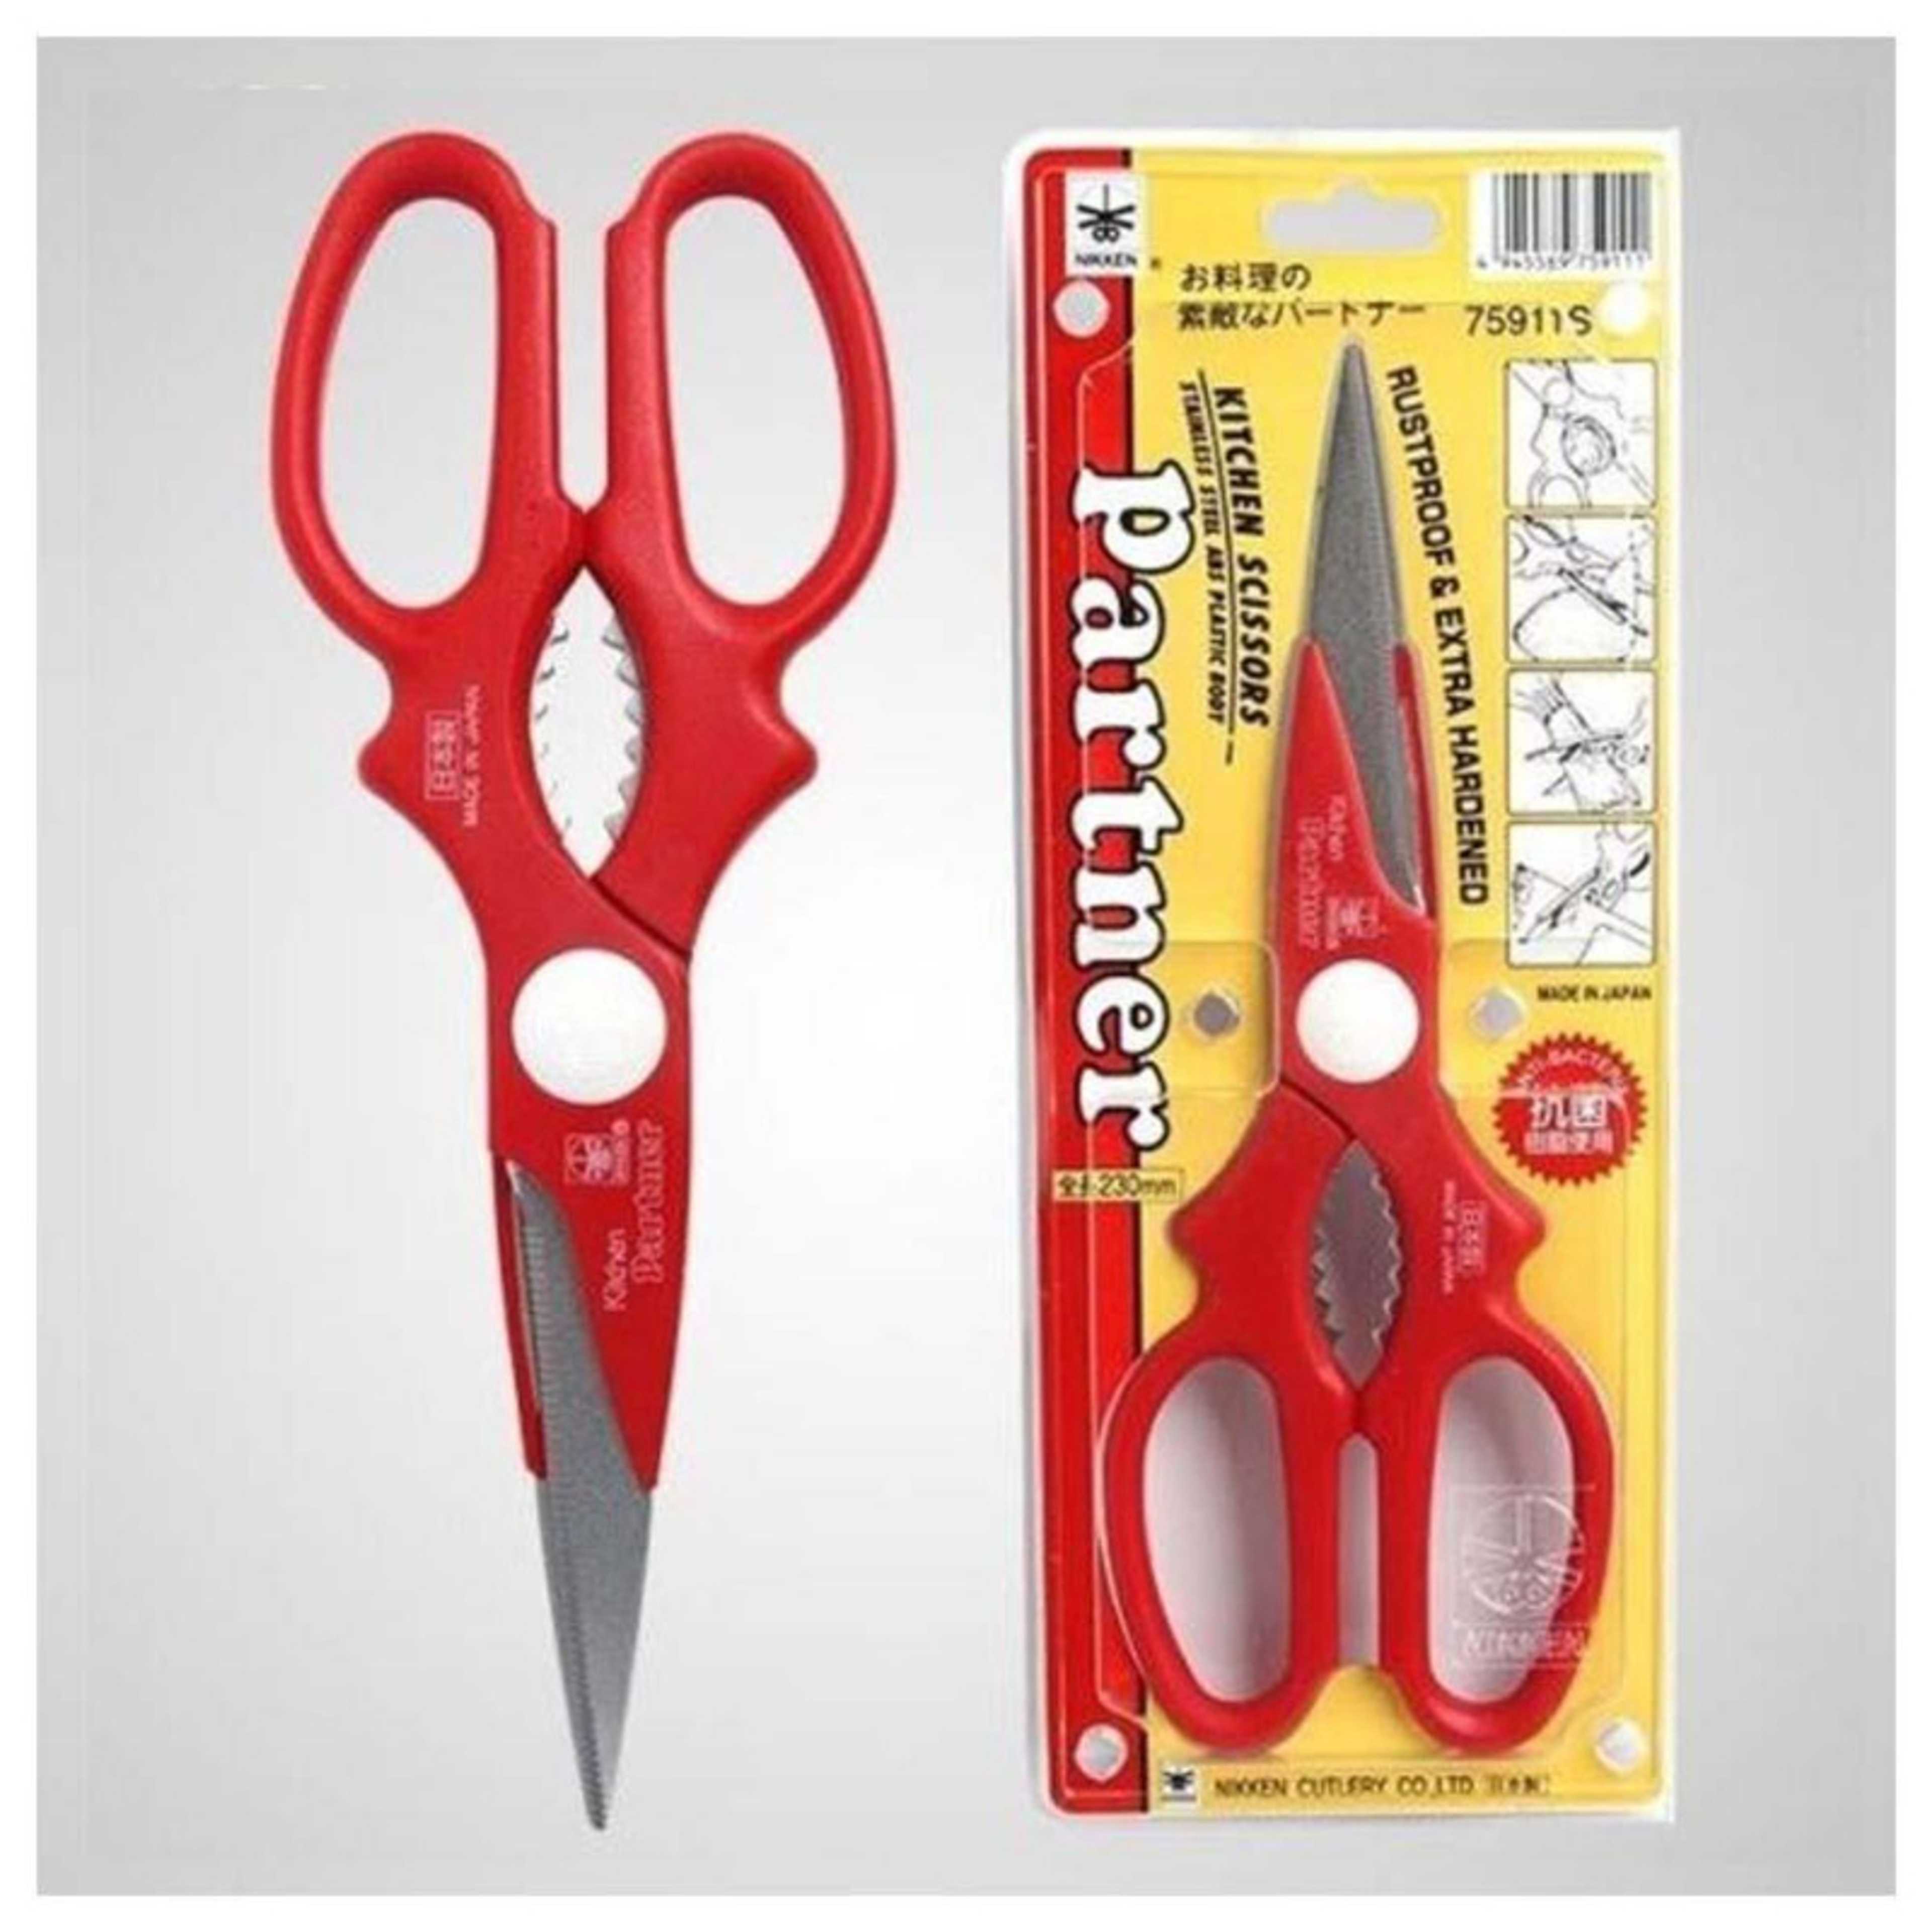 Kitchen scissors Stainless Steel blade